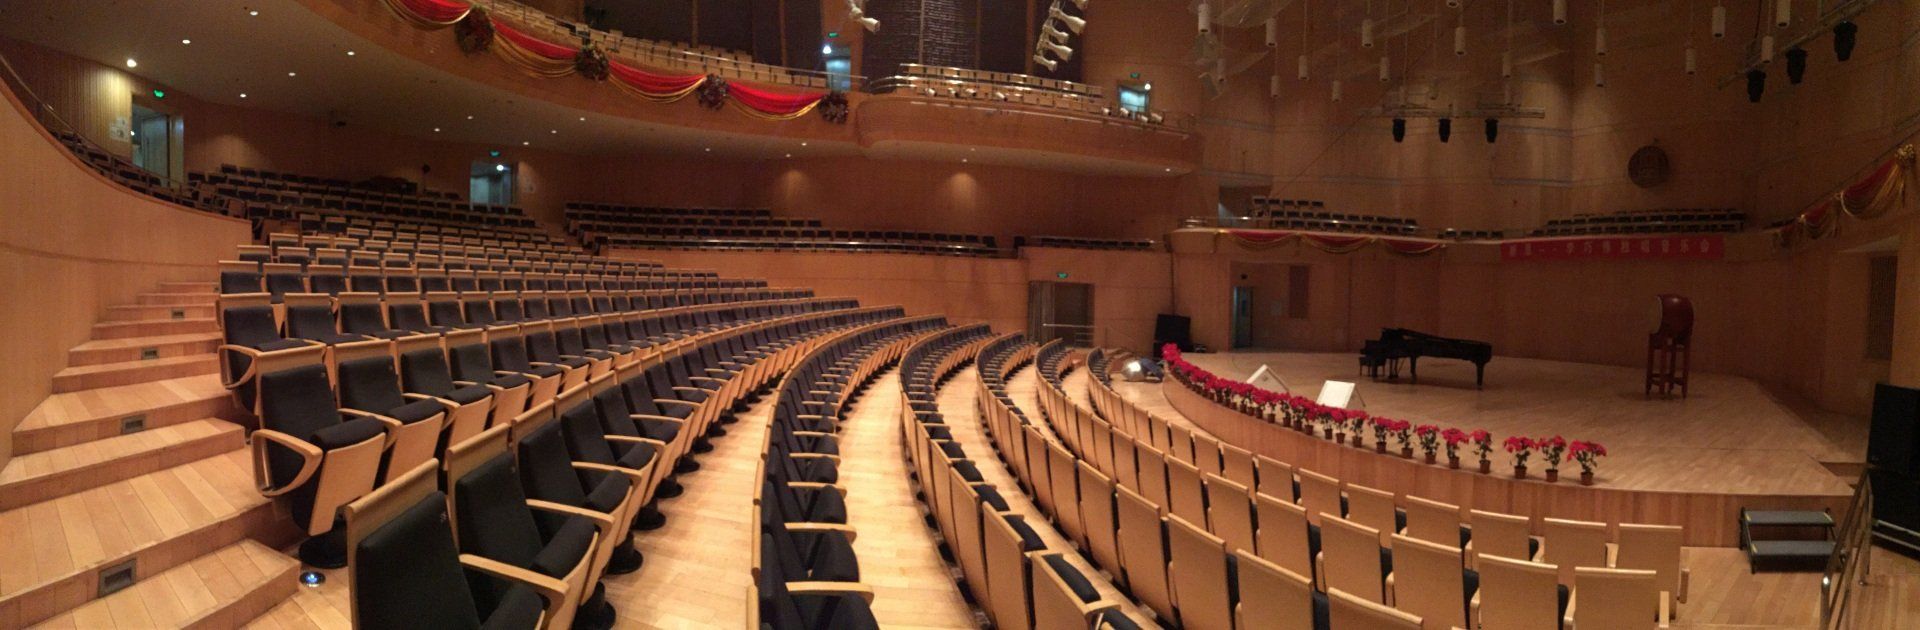 Acoustic auditorium utilizing hardwood throughout